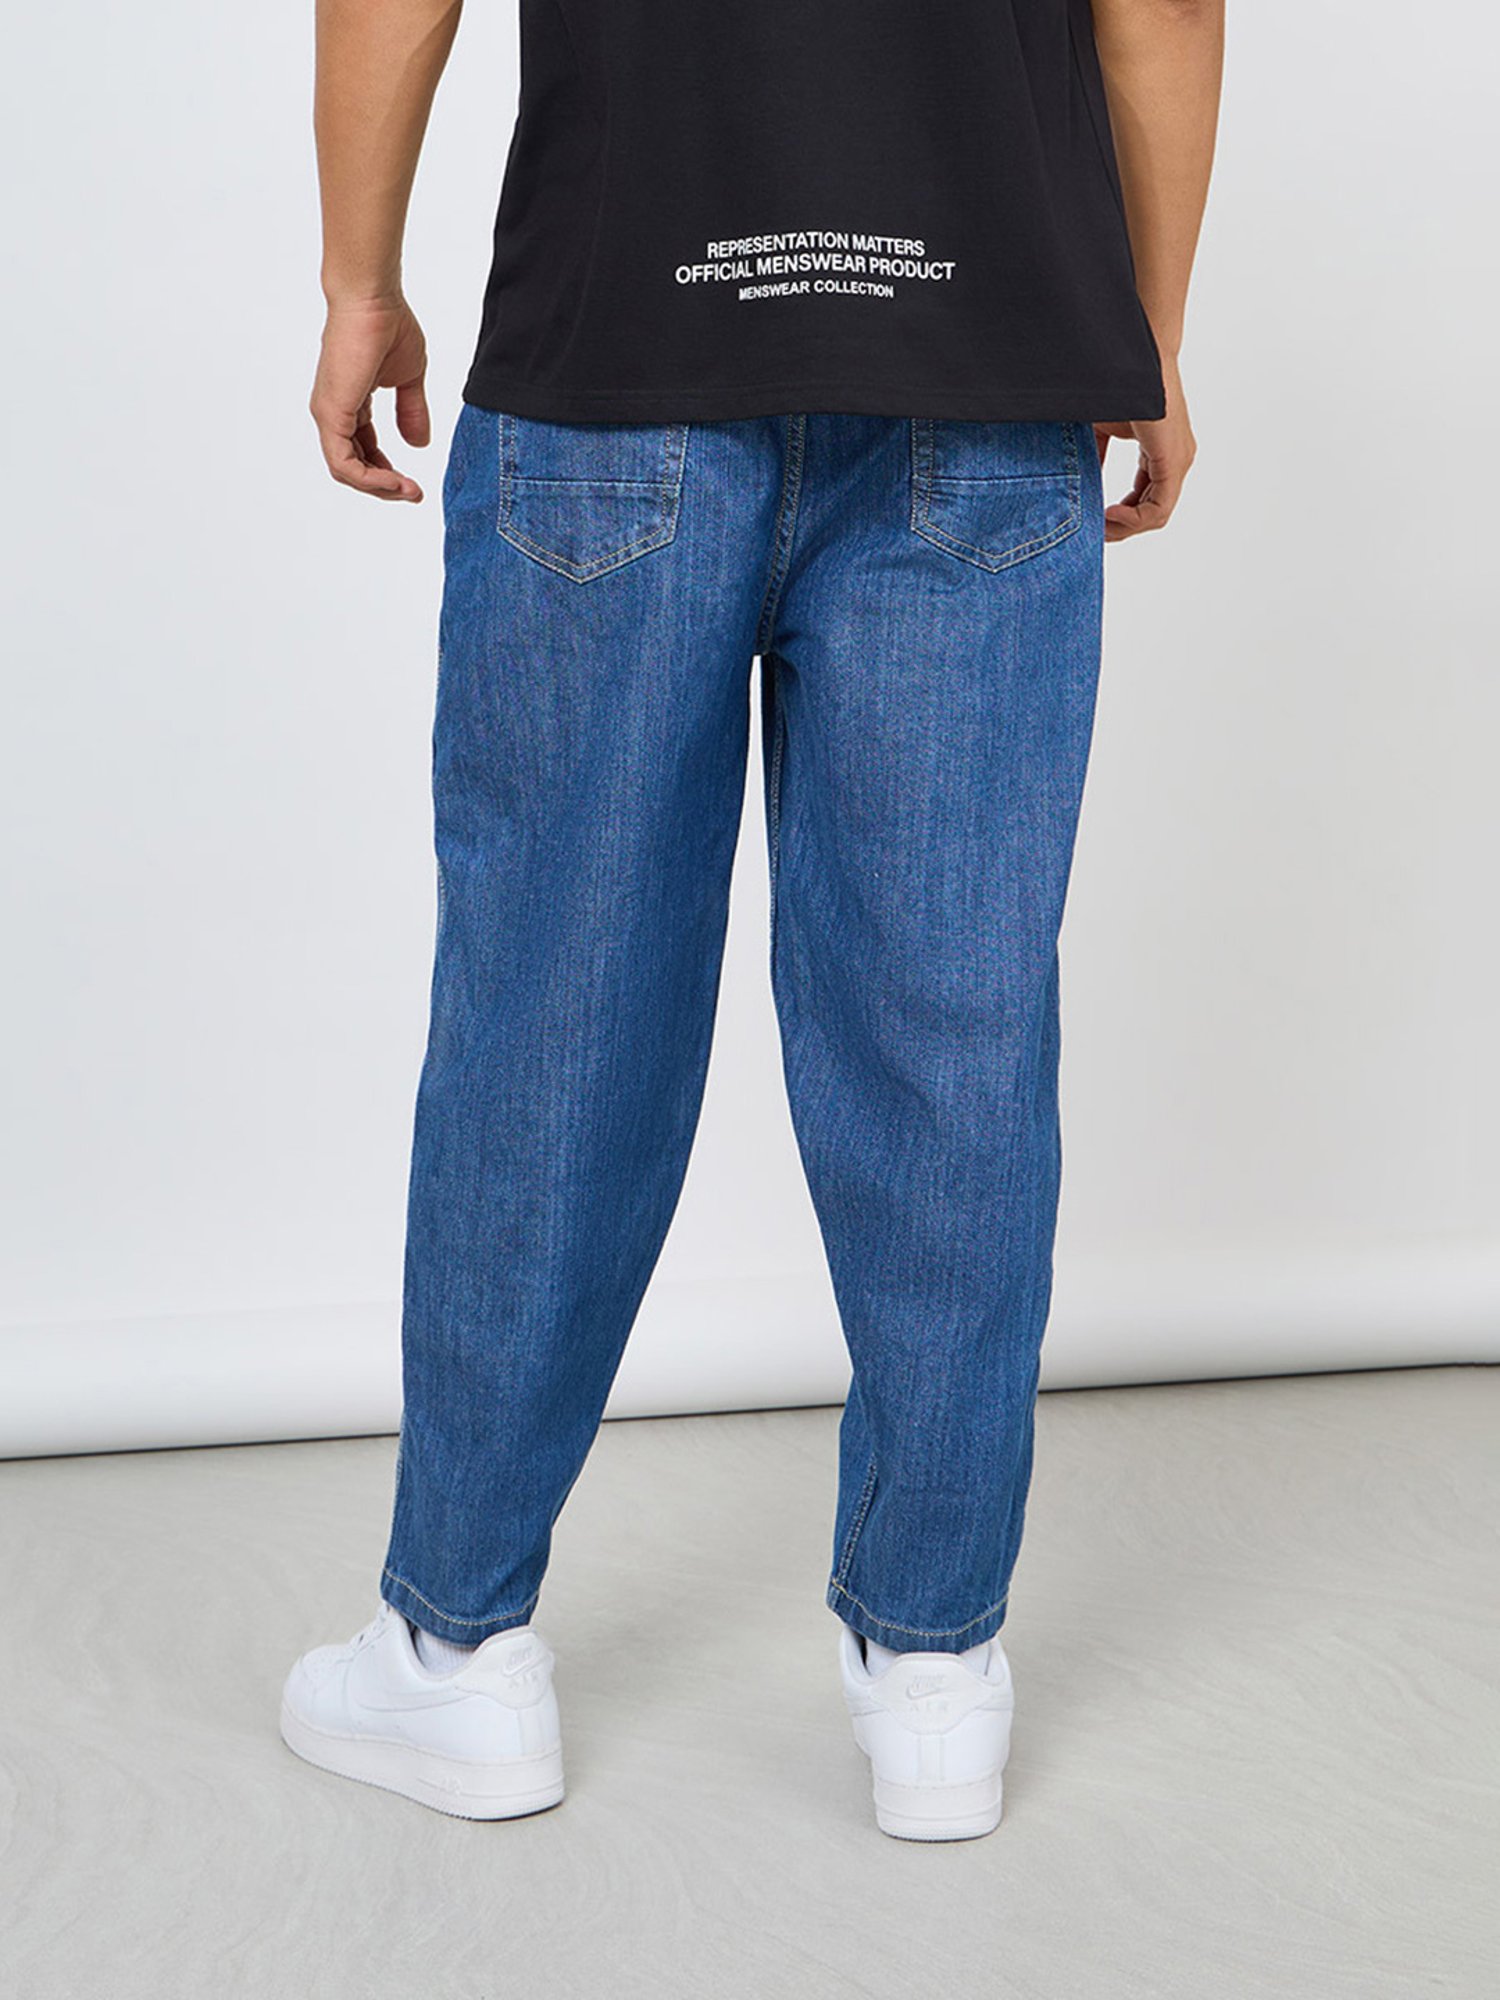 Buy Blue Jeans for Men by Styli Online  Ajiocom